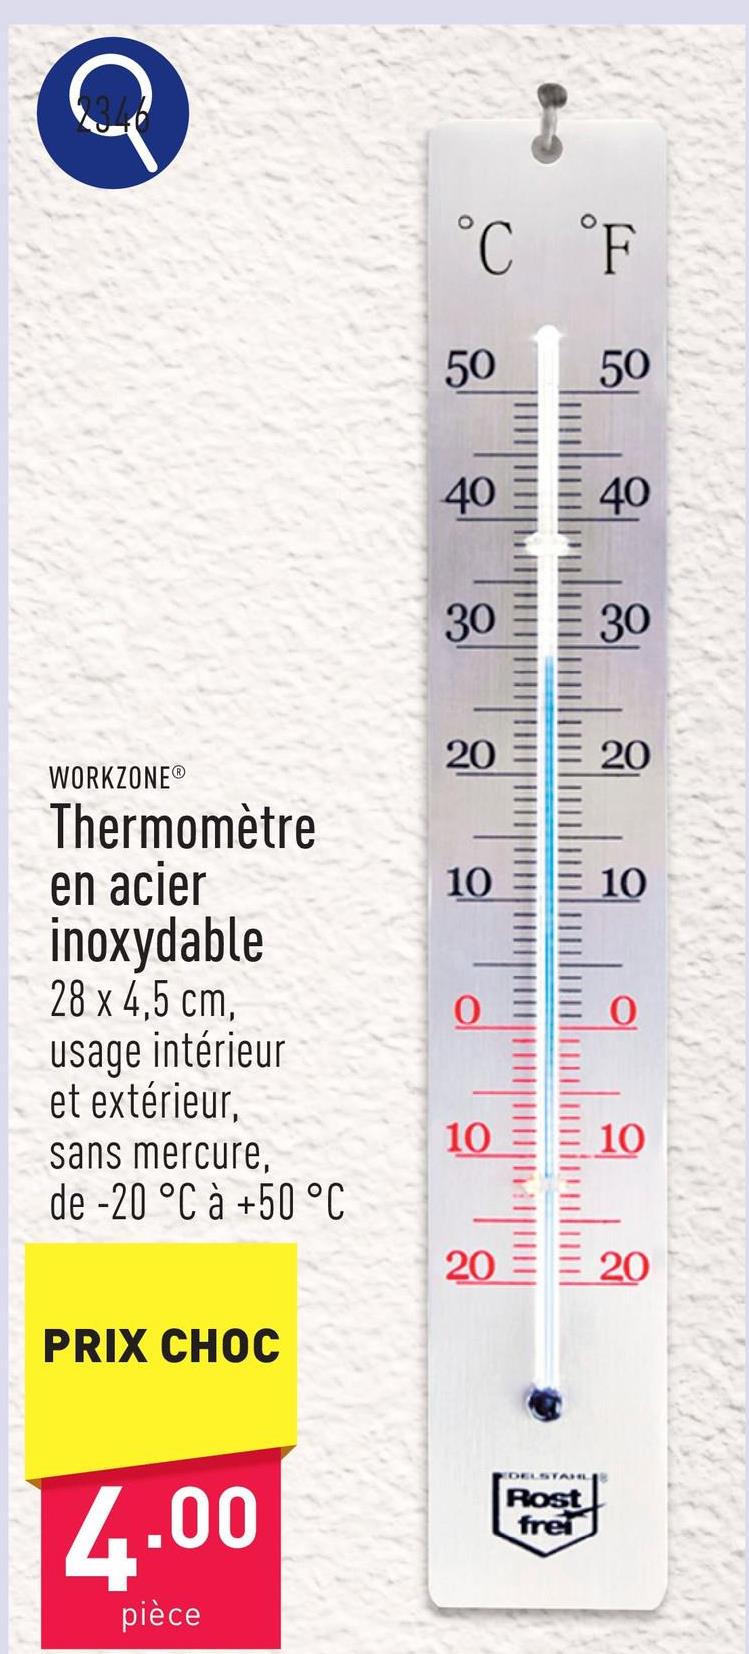 Thermomètre acier inoxydable, 28 x 4,5 cm, usage intérieur et extérieur, sans mercure, résistant aux intempéries, plage de -20 °C à +50 °C